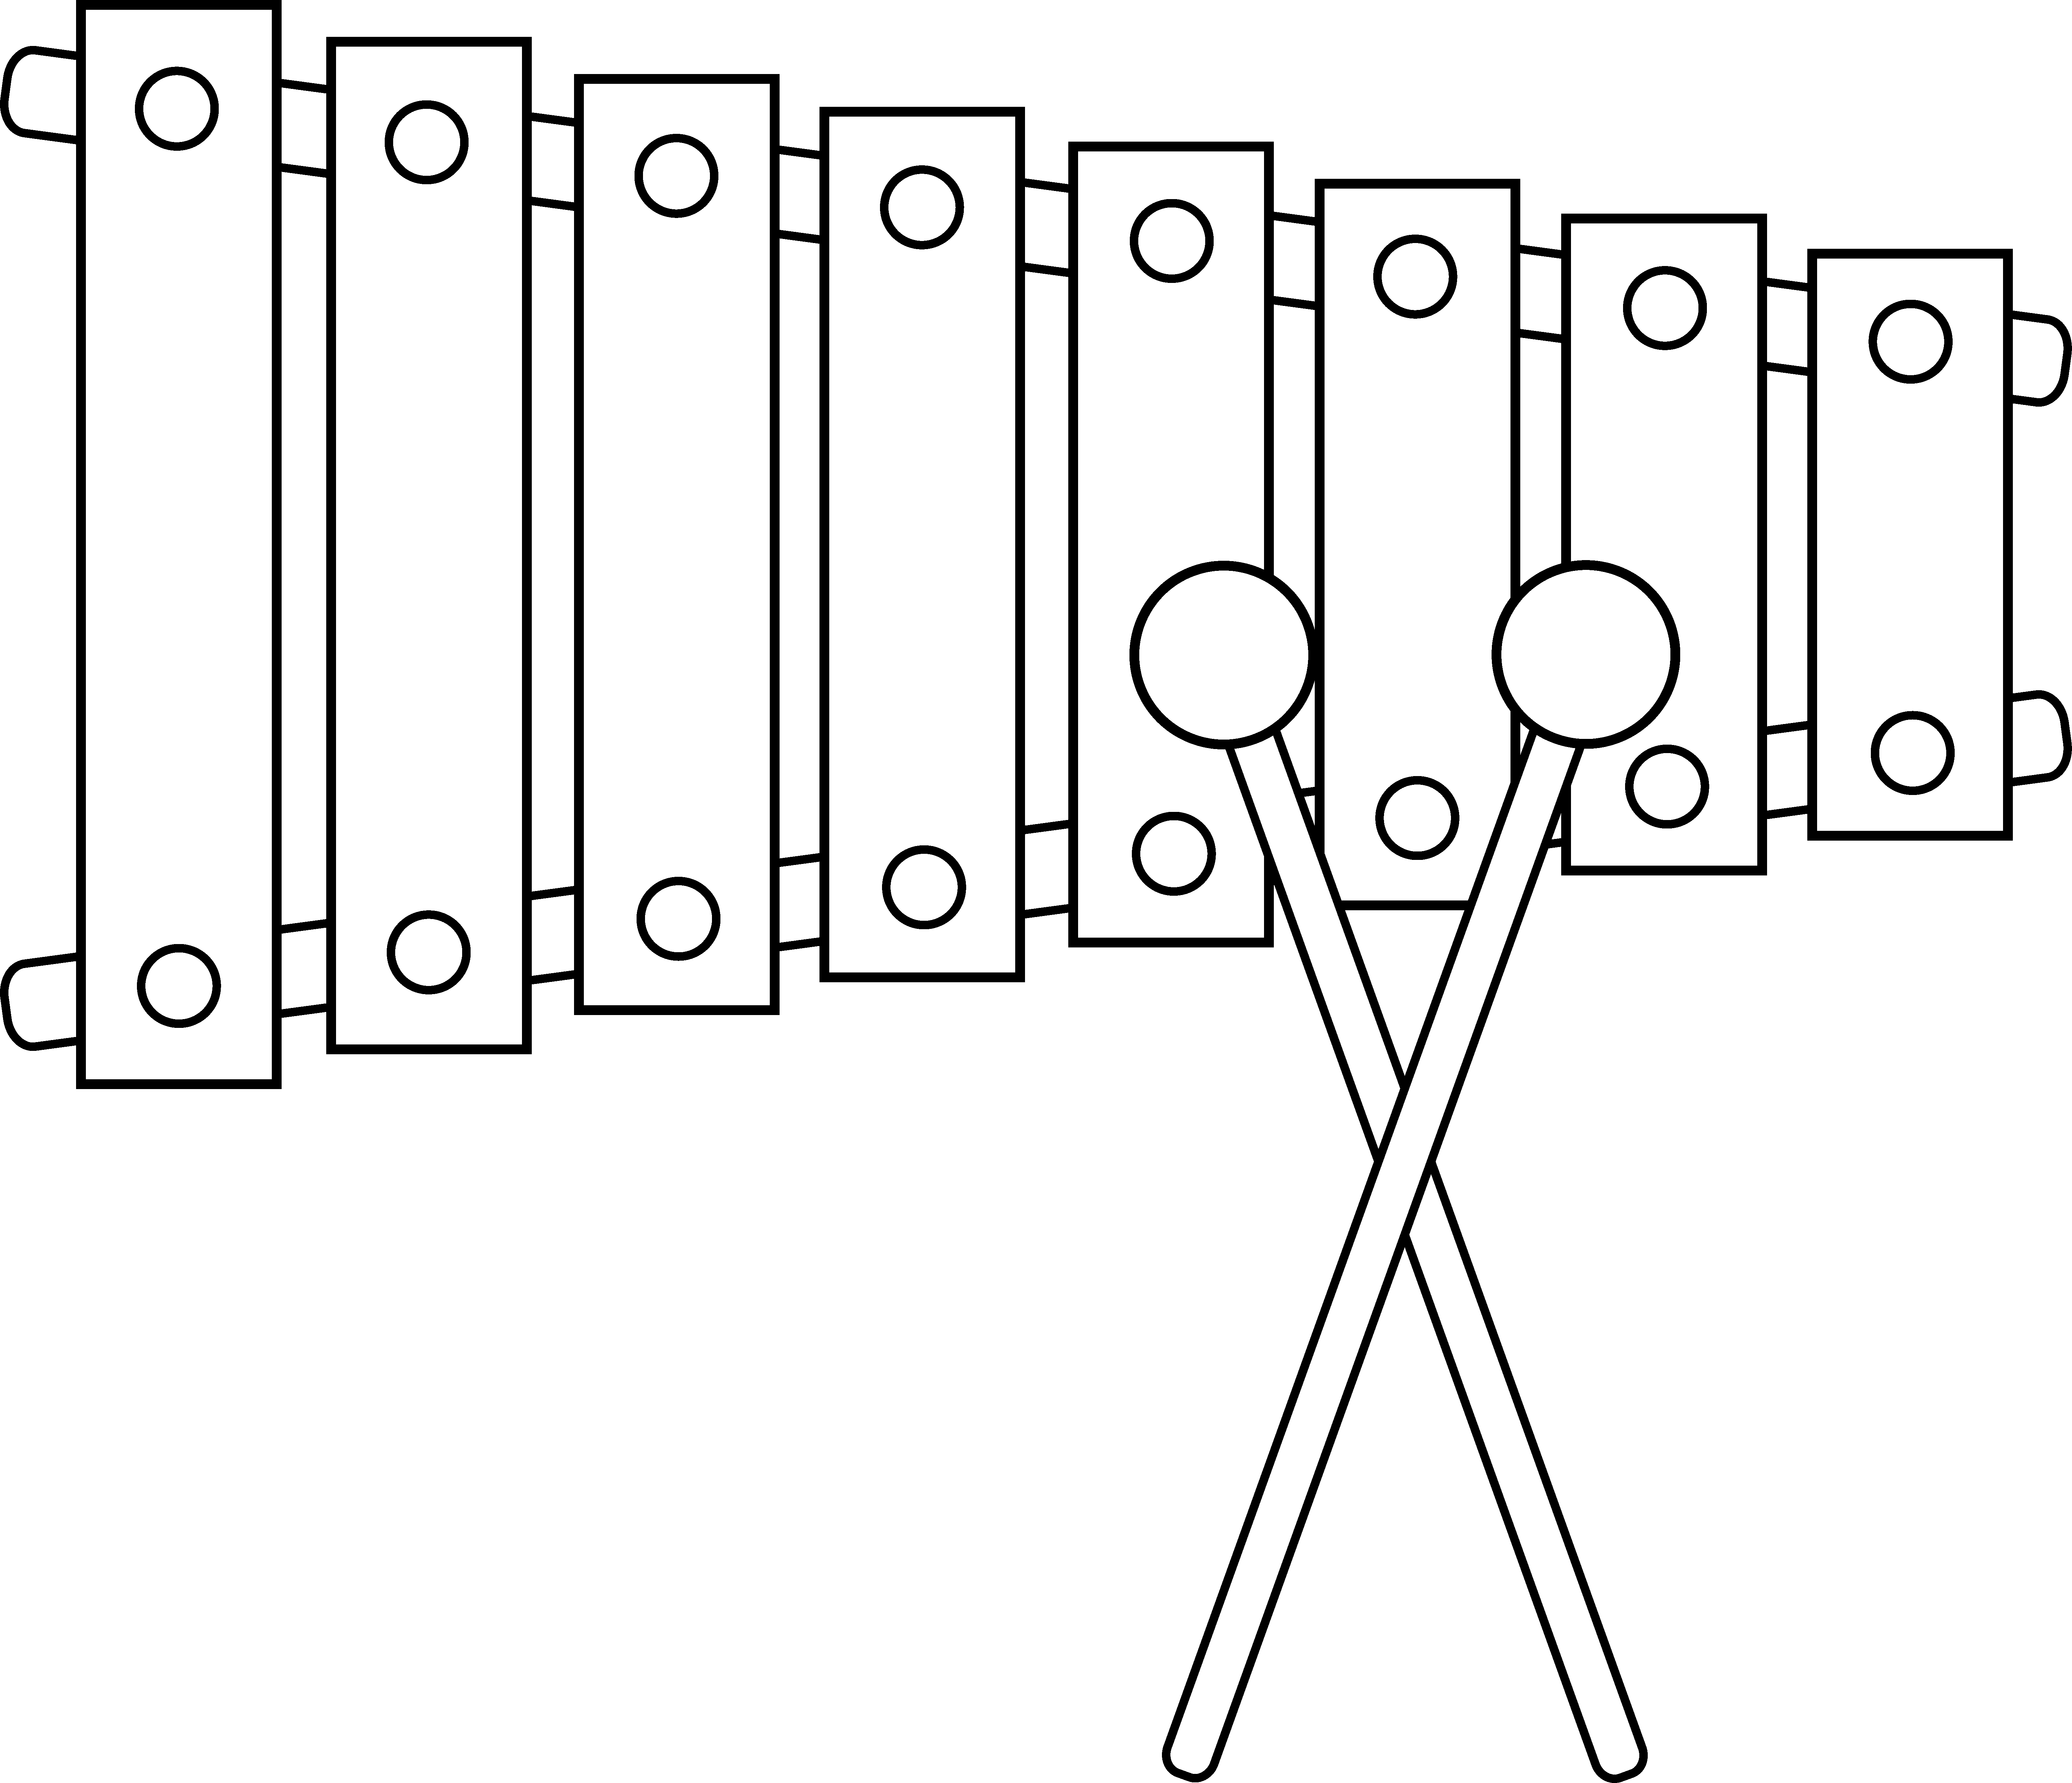 Xylophone line art.